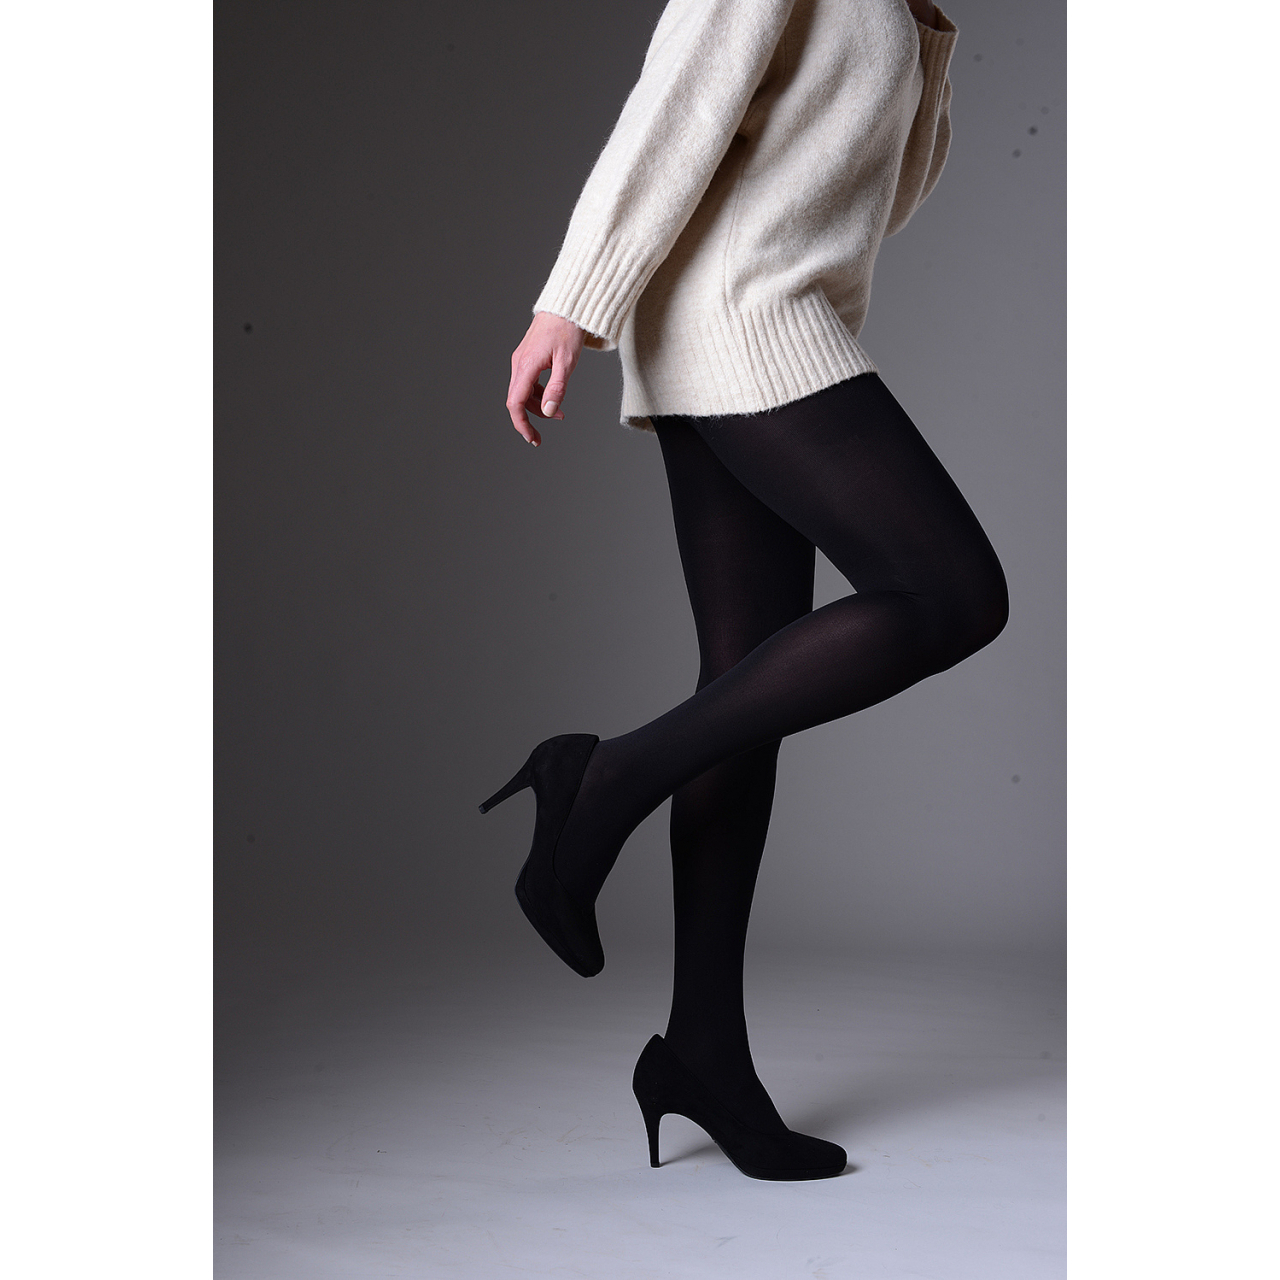 Punčochové kalhoty Lady B MICRO tights 200 DEN - černé, XL